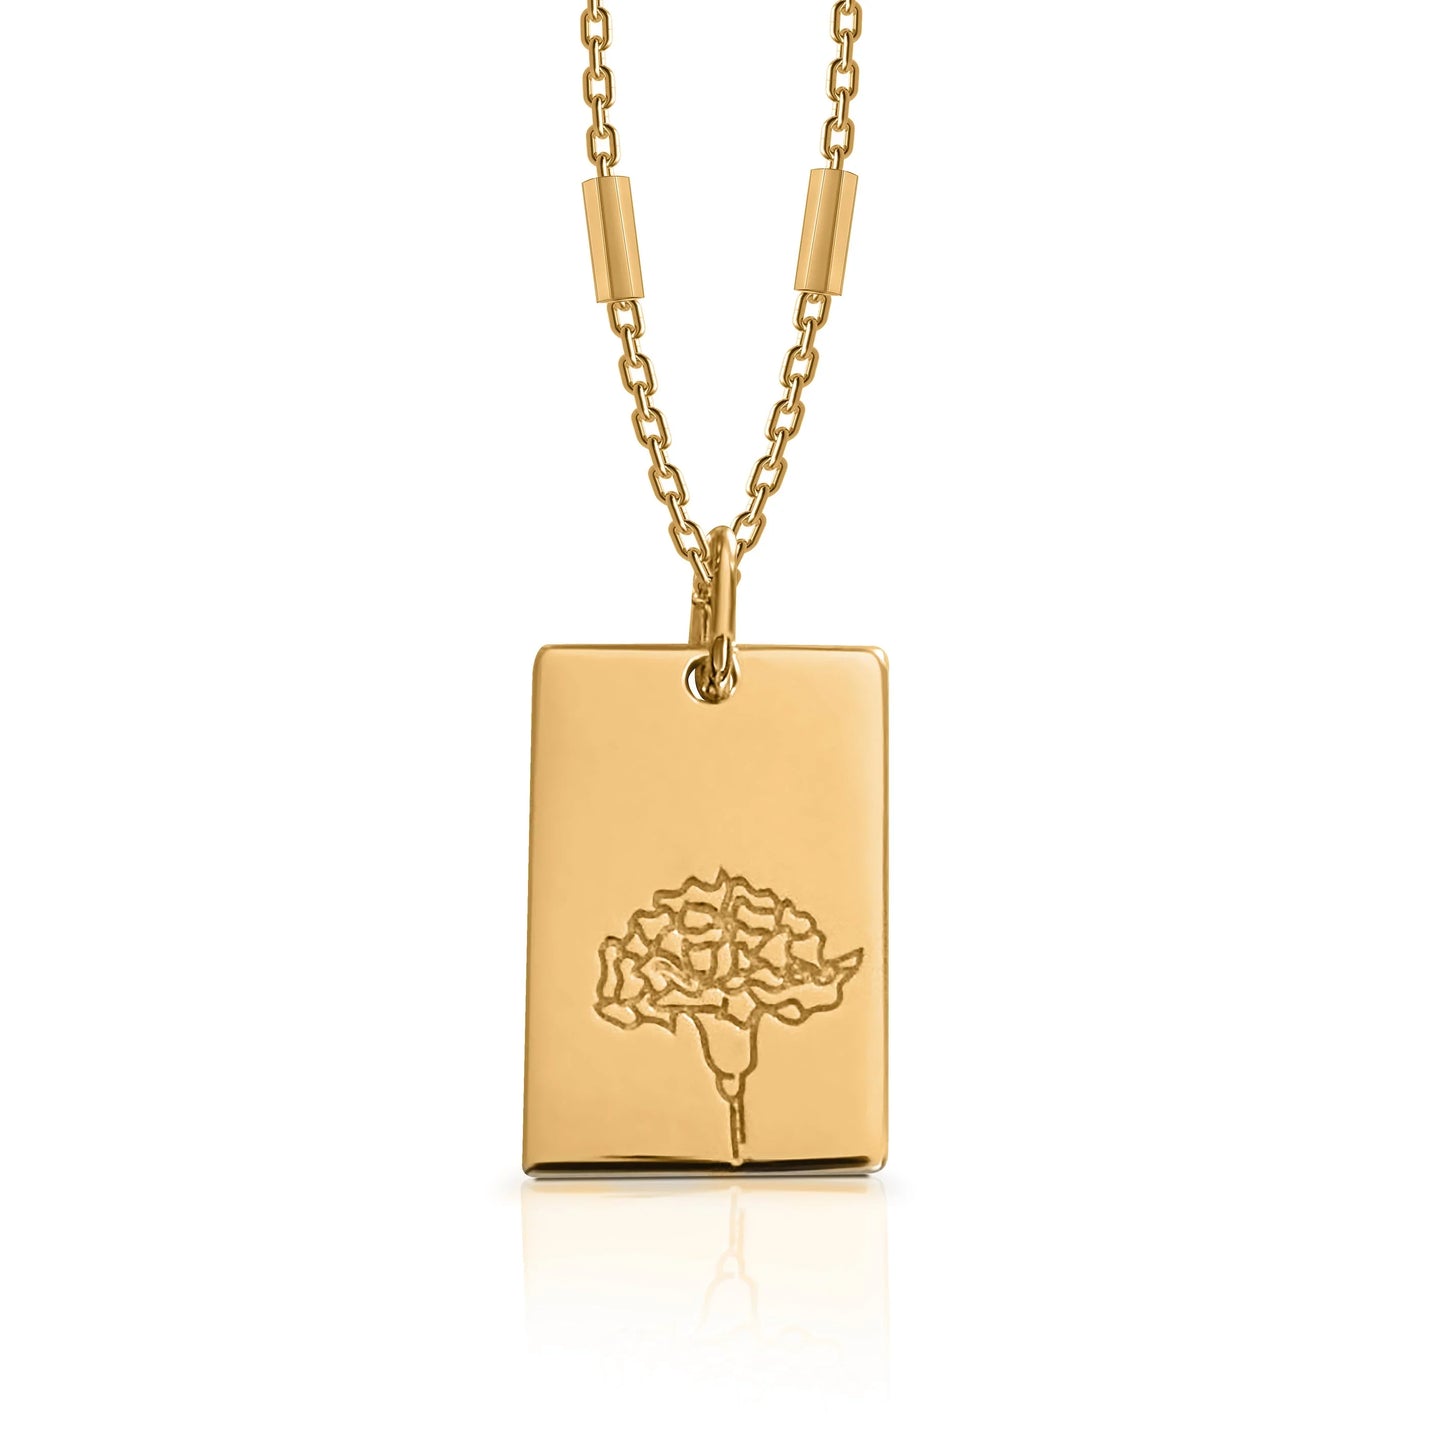 Birth Flower Necklace - 18k Gold